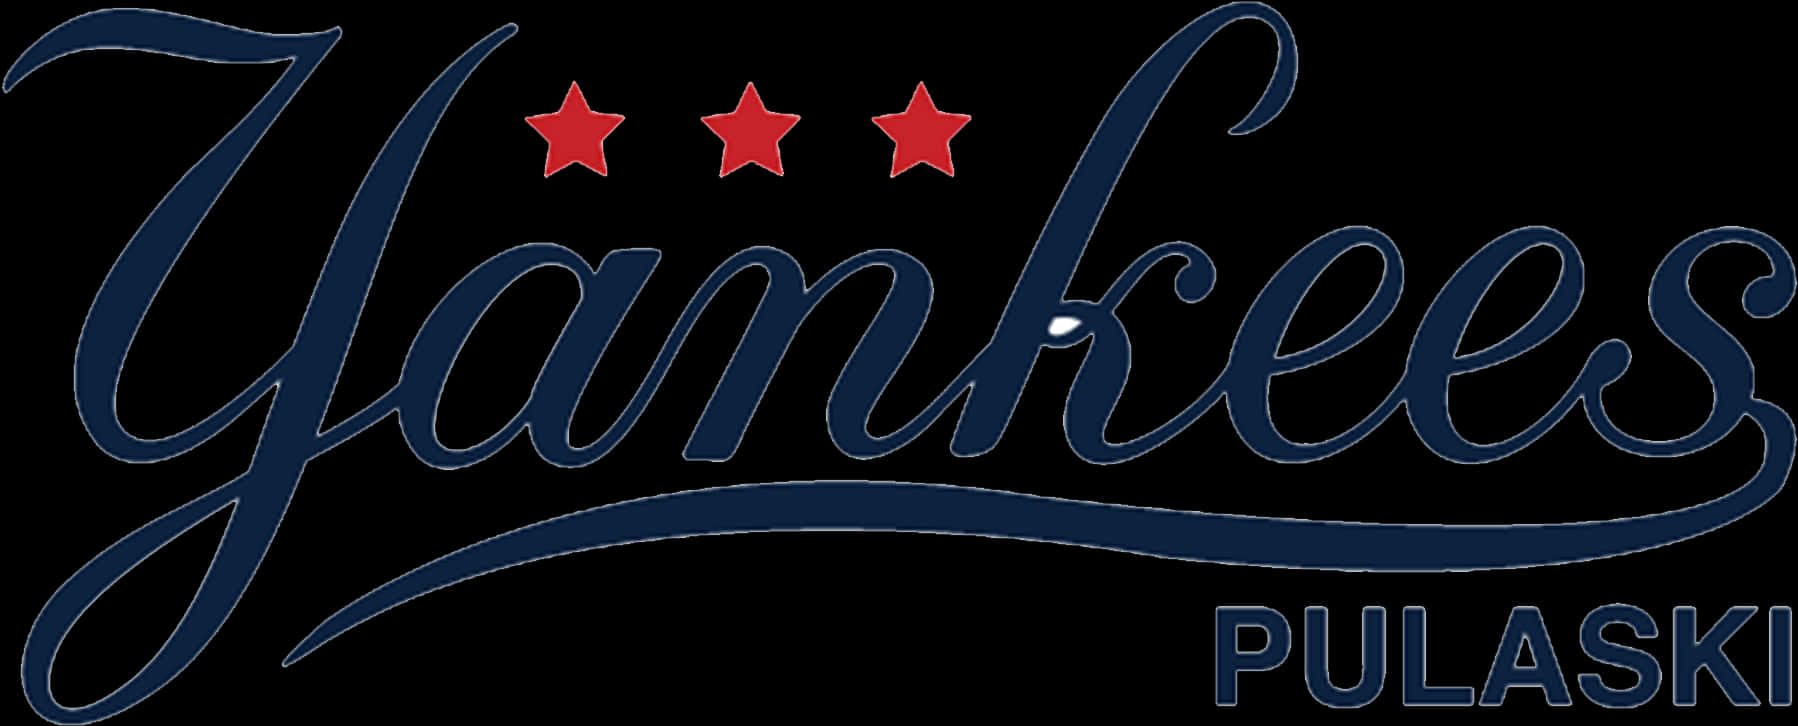 Yankees Logo Png